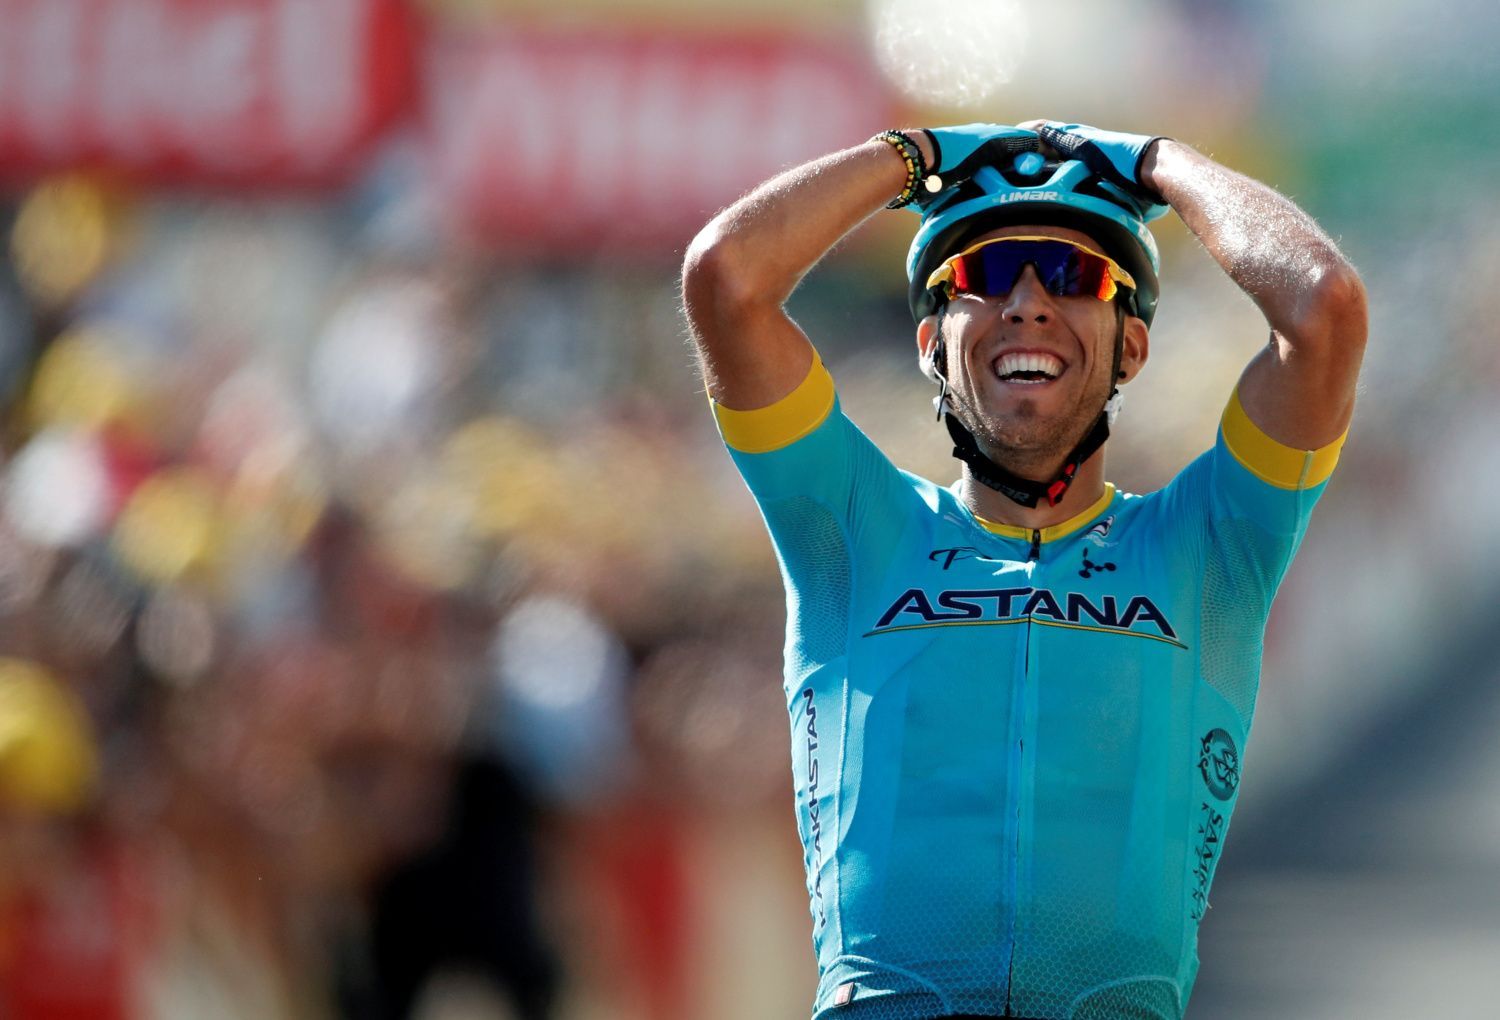 Omar Fraile slaví vítězství v14. etapě Tour de France 2018